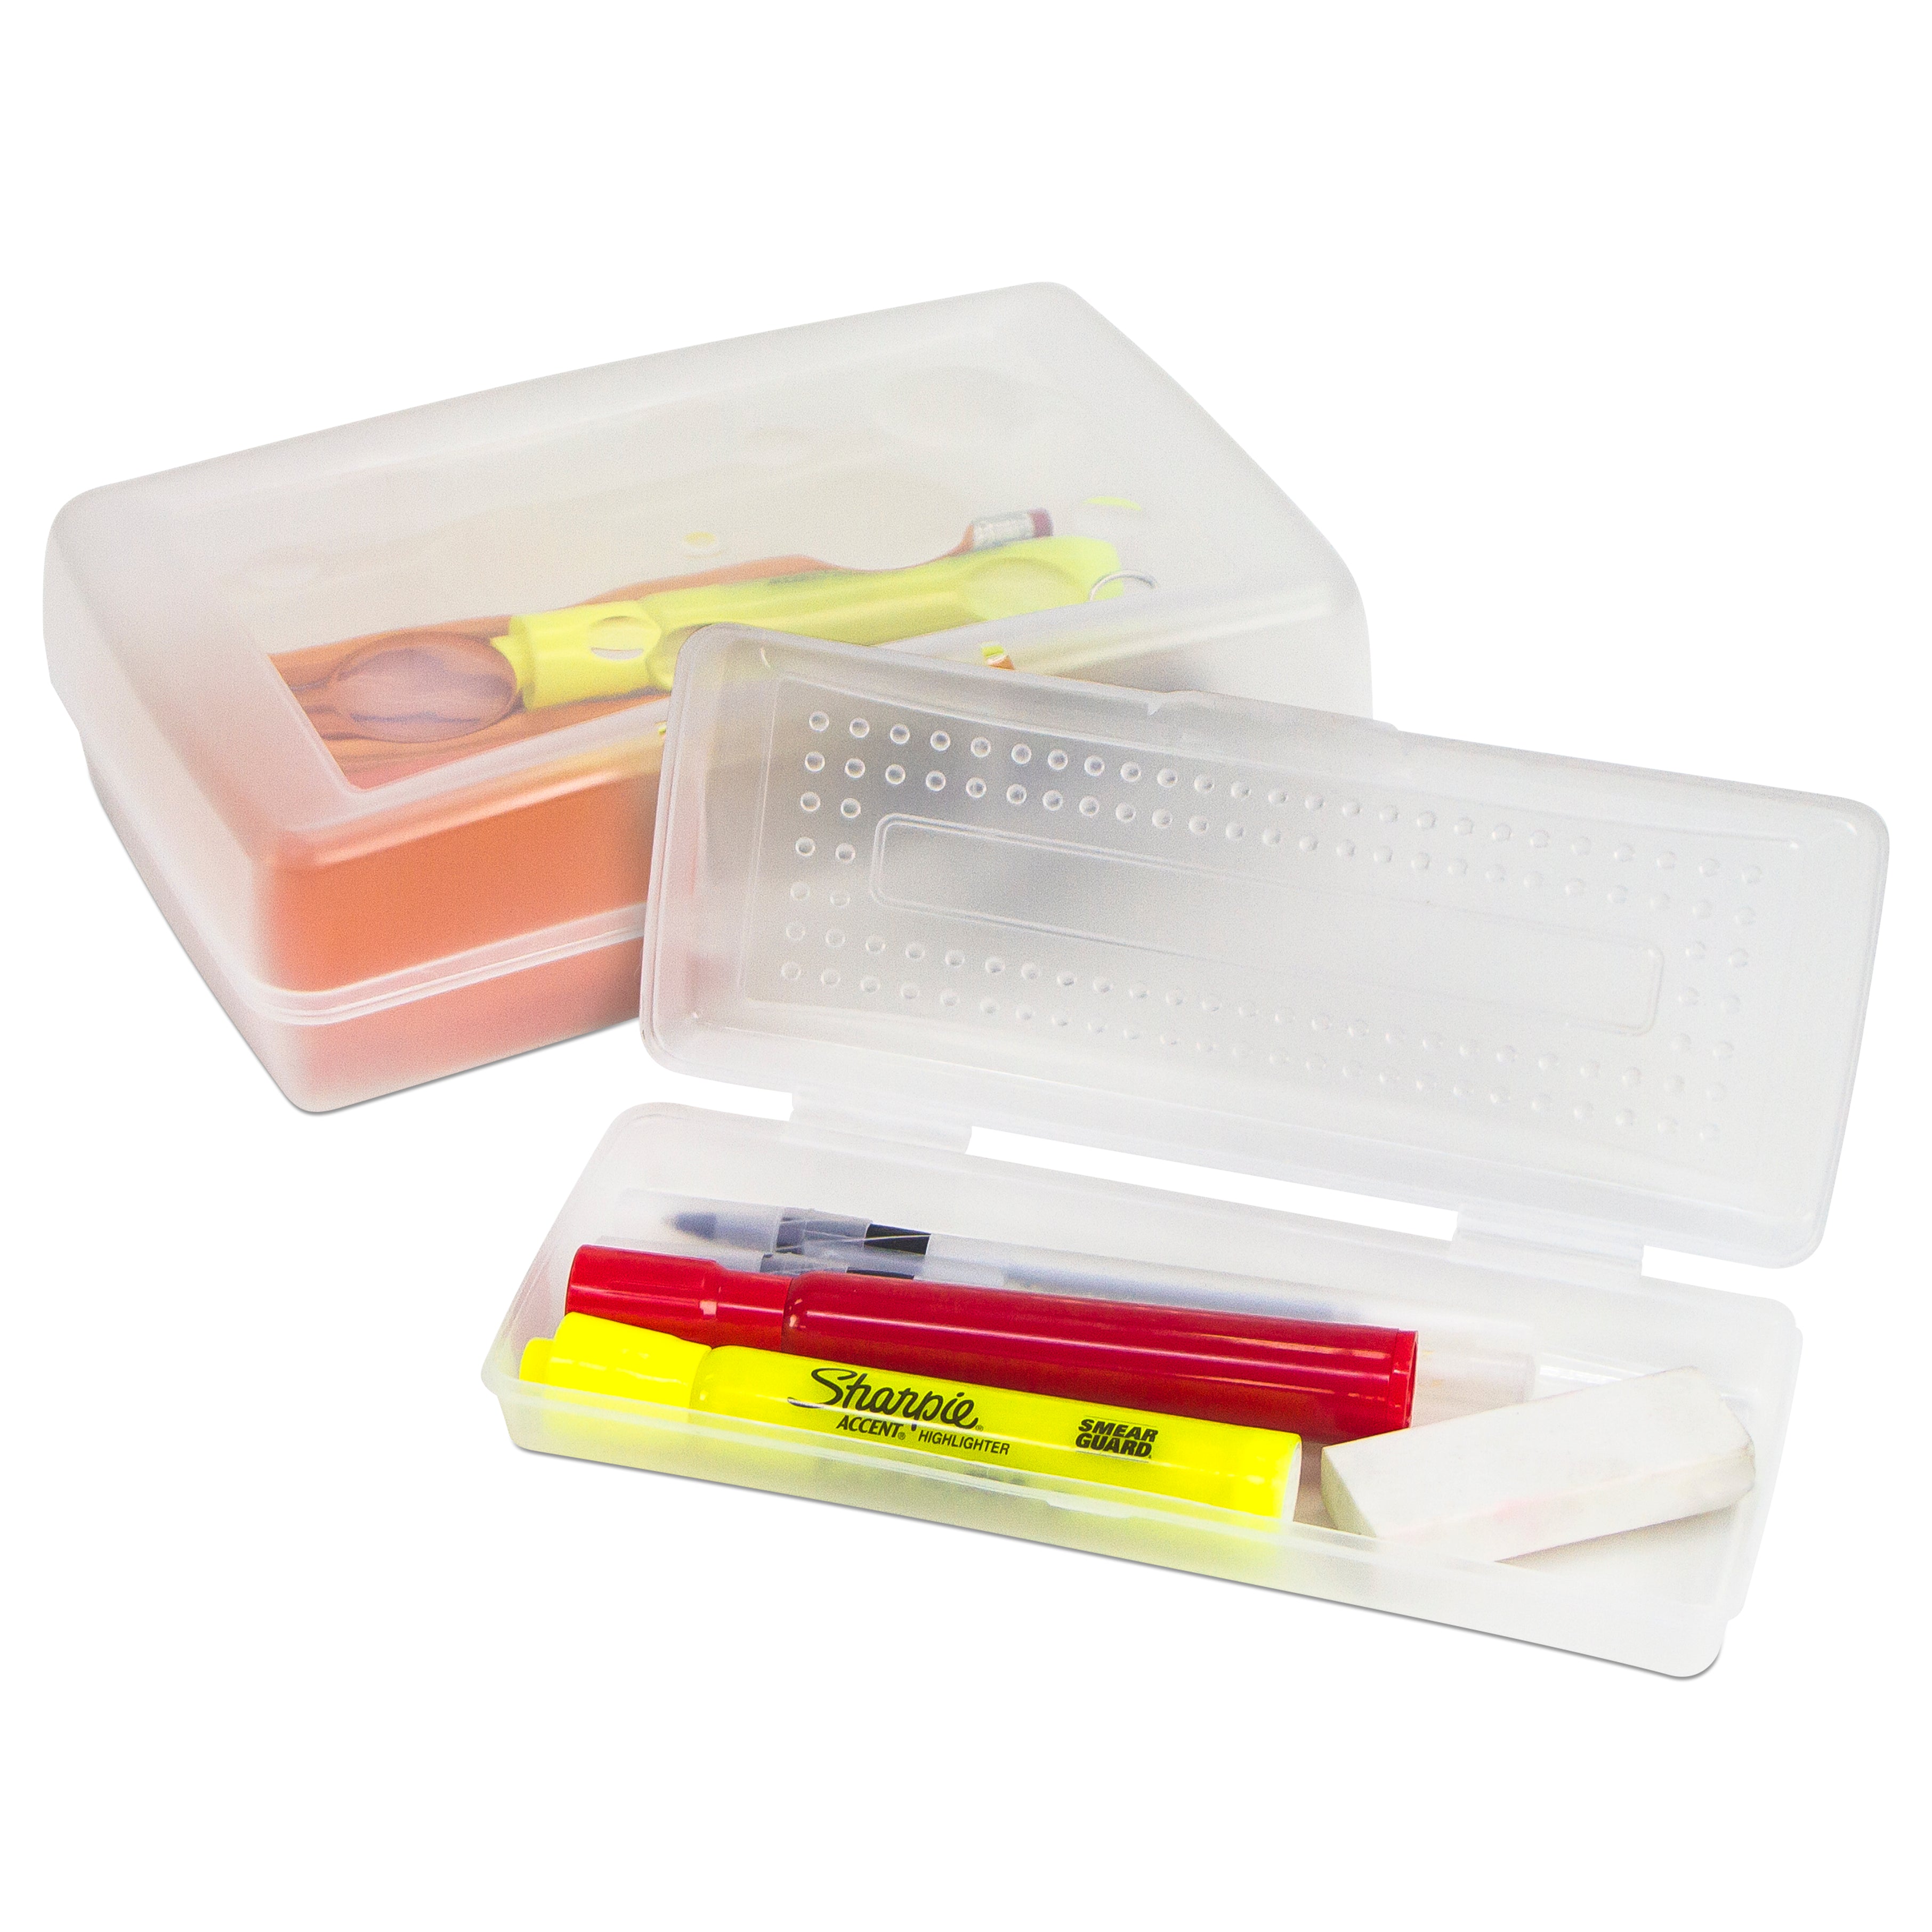 Trousse à crayons transparente, boîte à crayons en plastique